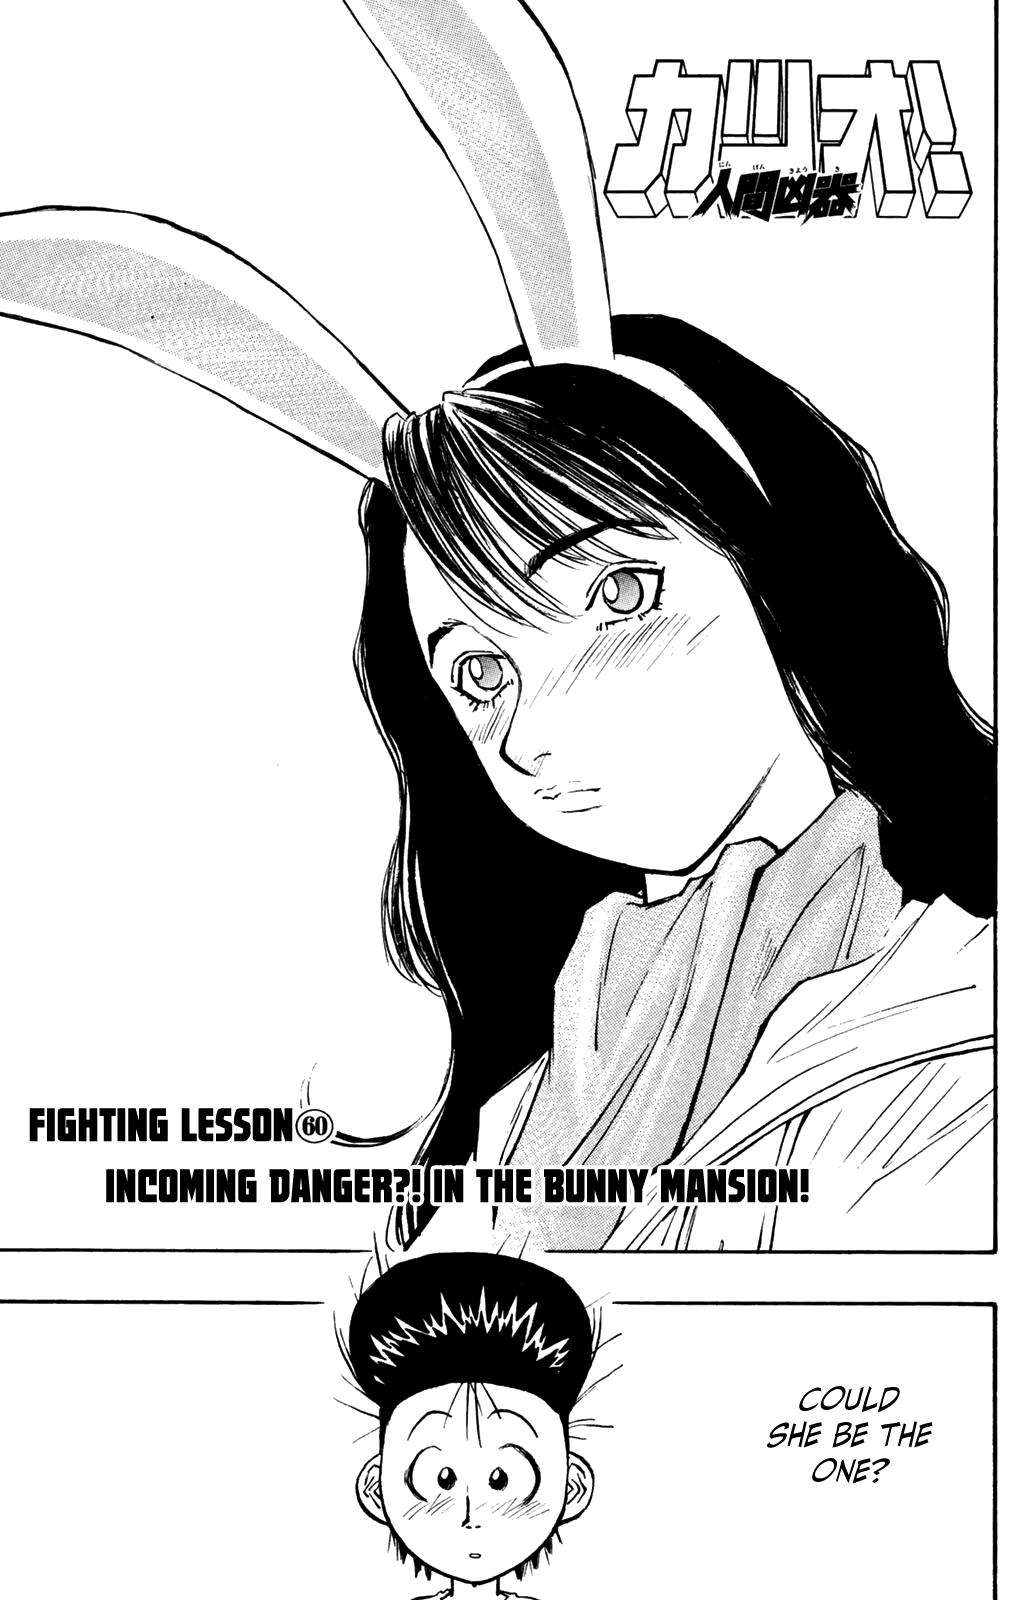 Ningen Kyouki Katsuo - Page 1